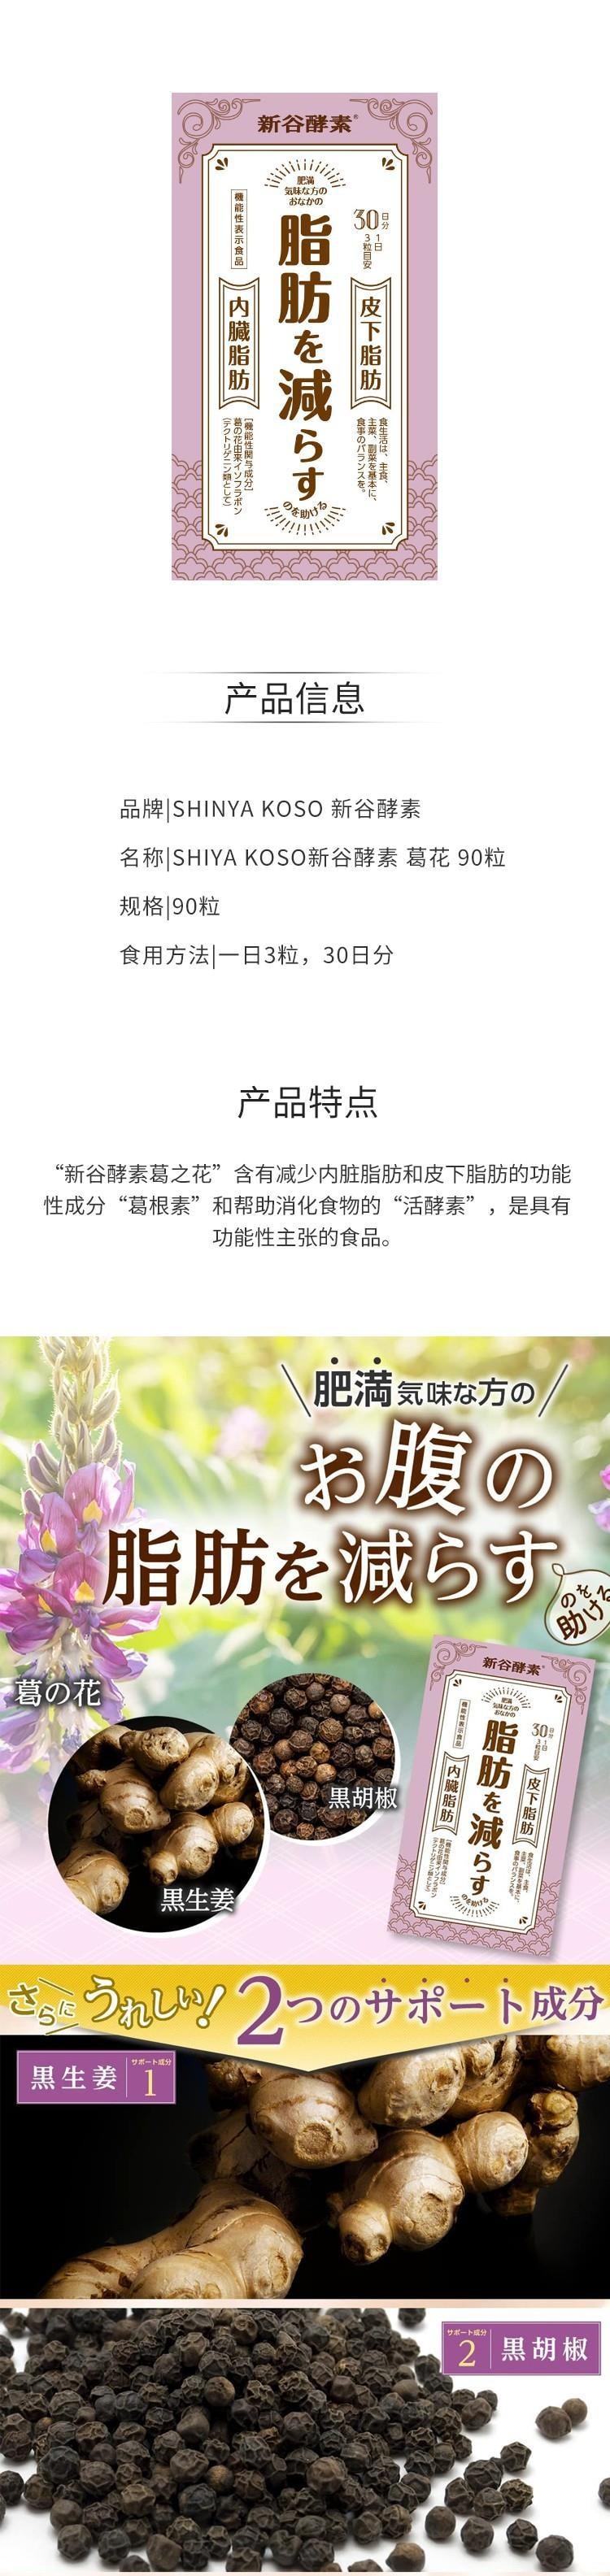 【日本直邮】SHIYA KOSO新谷酵素 葛花植物酵素 减皮下脂肪降低内脏脂肪 90粒